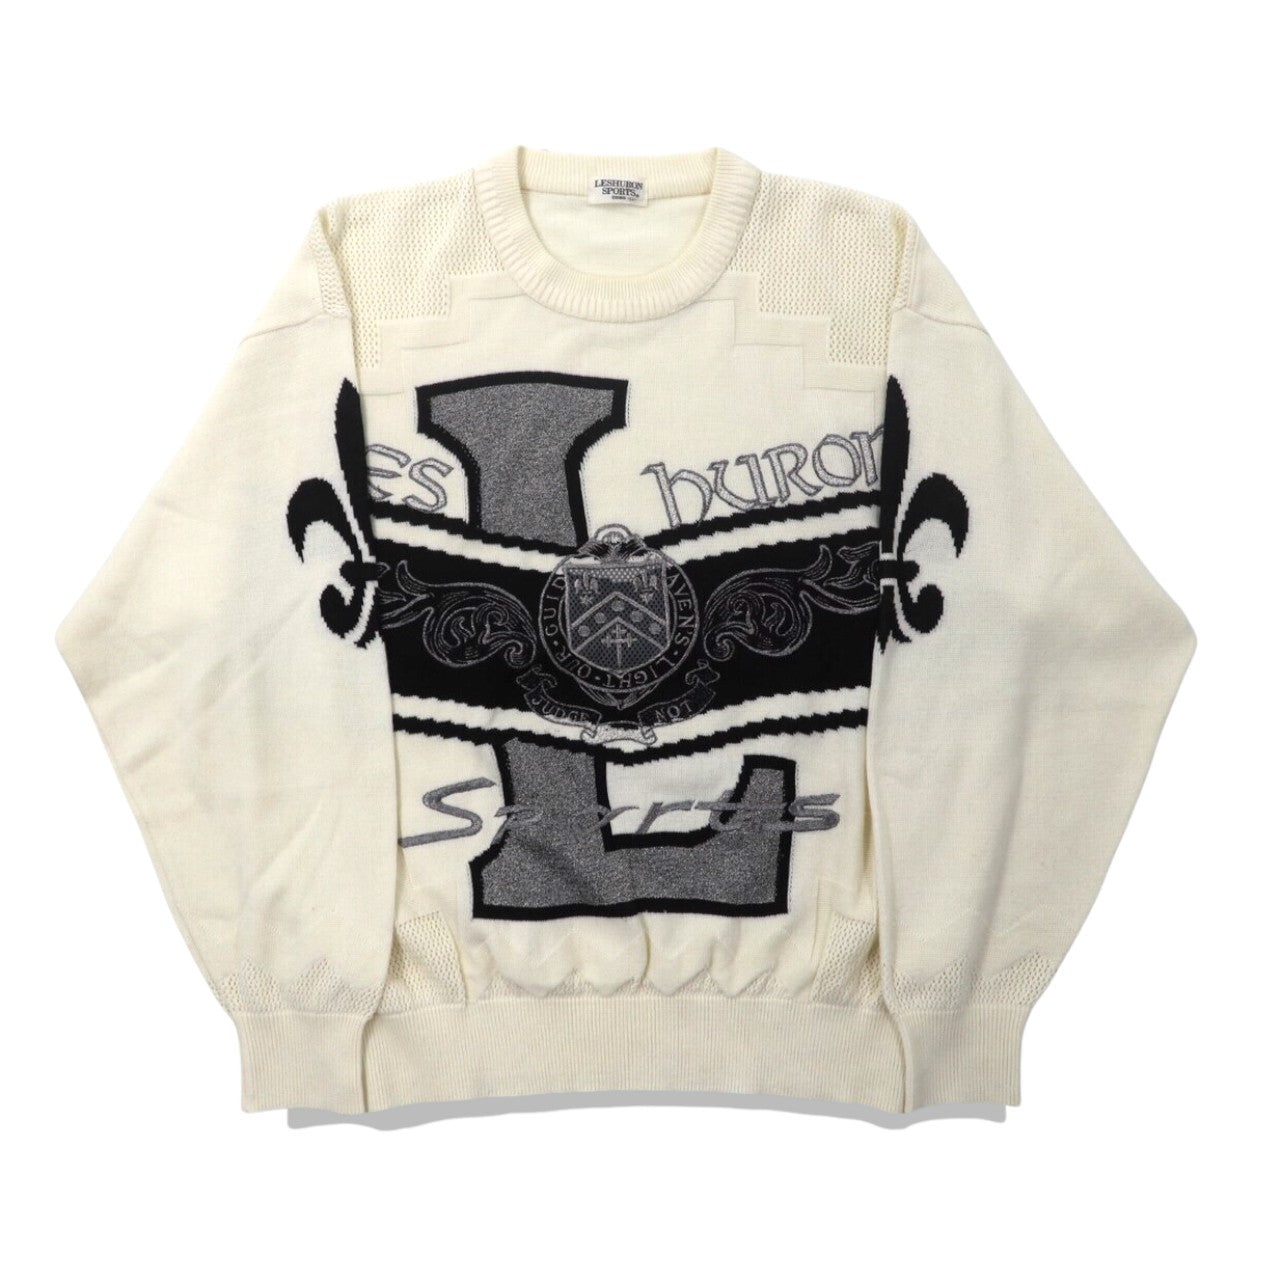 LESHURON SPORTS UOMO ニットセーター LL ホワイト アクリル エンブレム刺繍 日本製